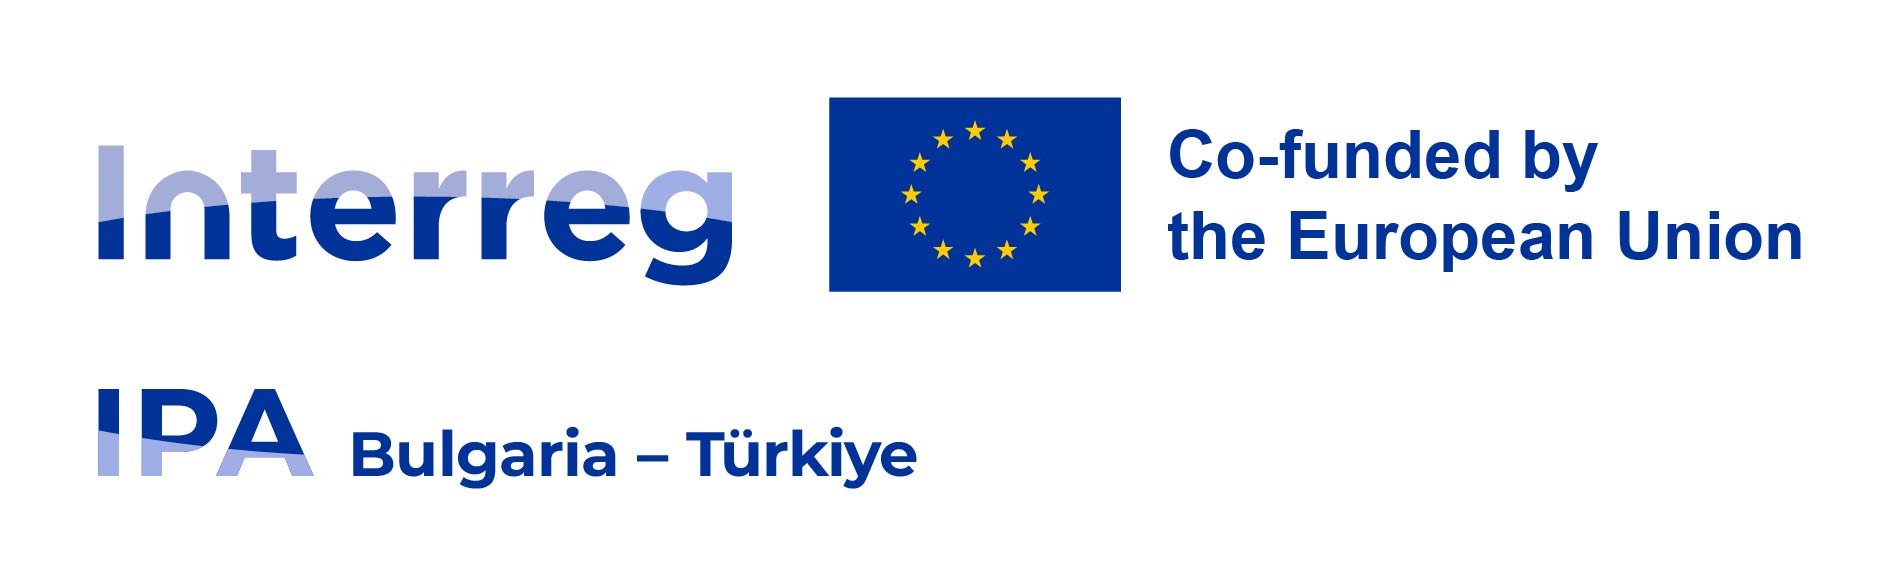 ПОКАНА към ЮЛНЦ за участие в състава на Комитета за наблюдение на Интеррег VI-А ИПП програмата България - Турция 2021– 2027 г.